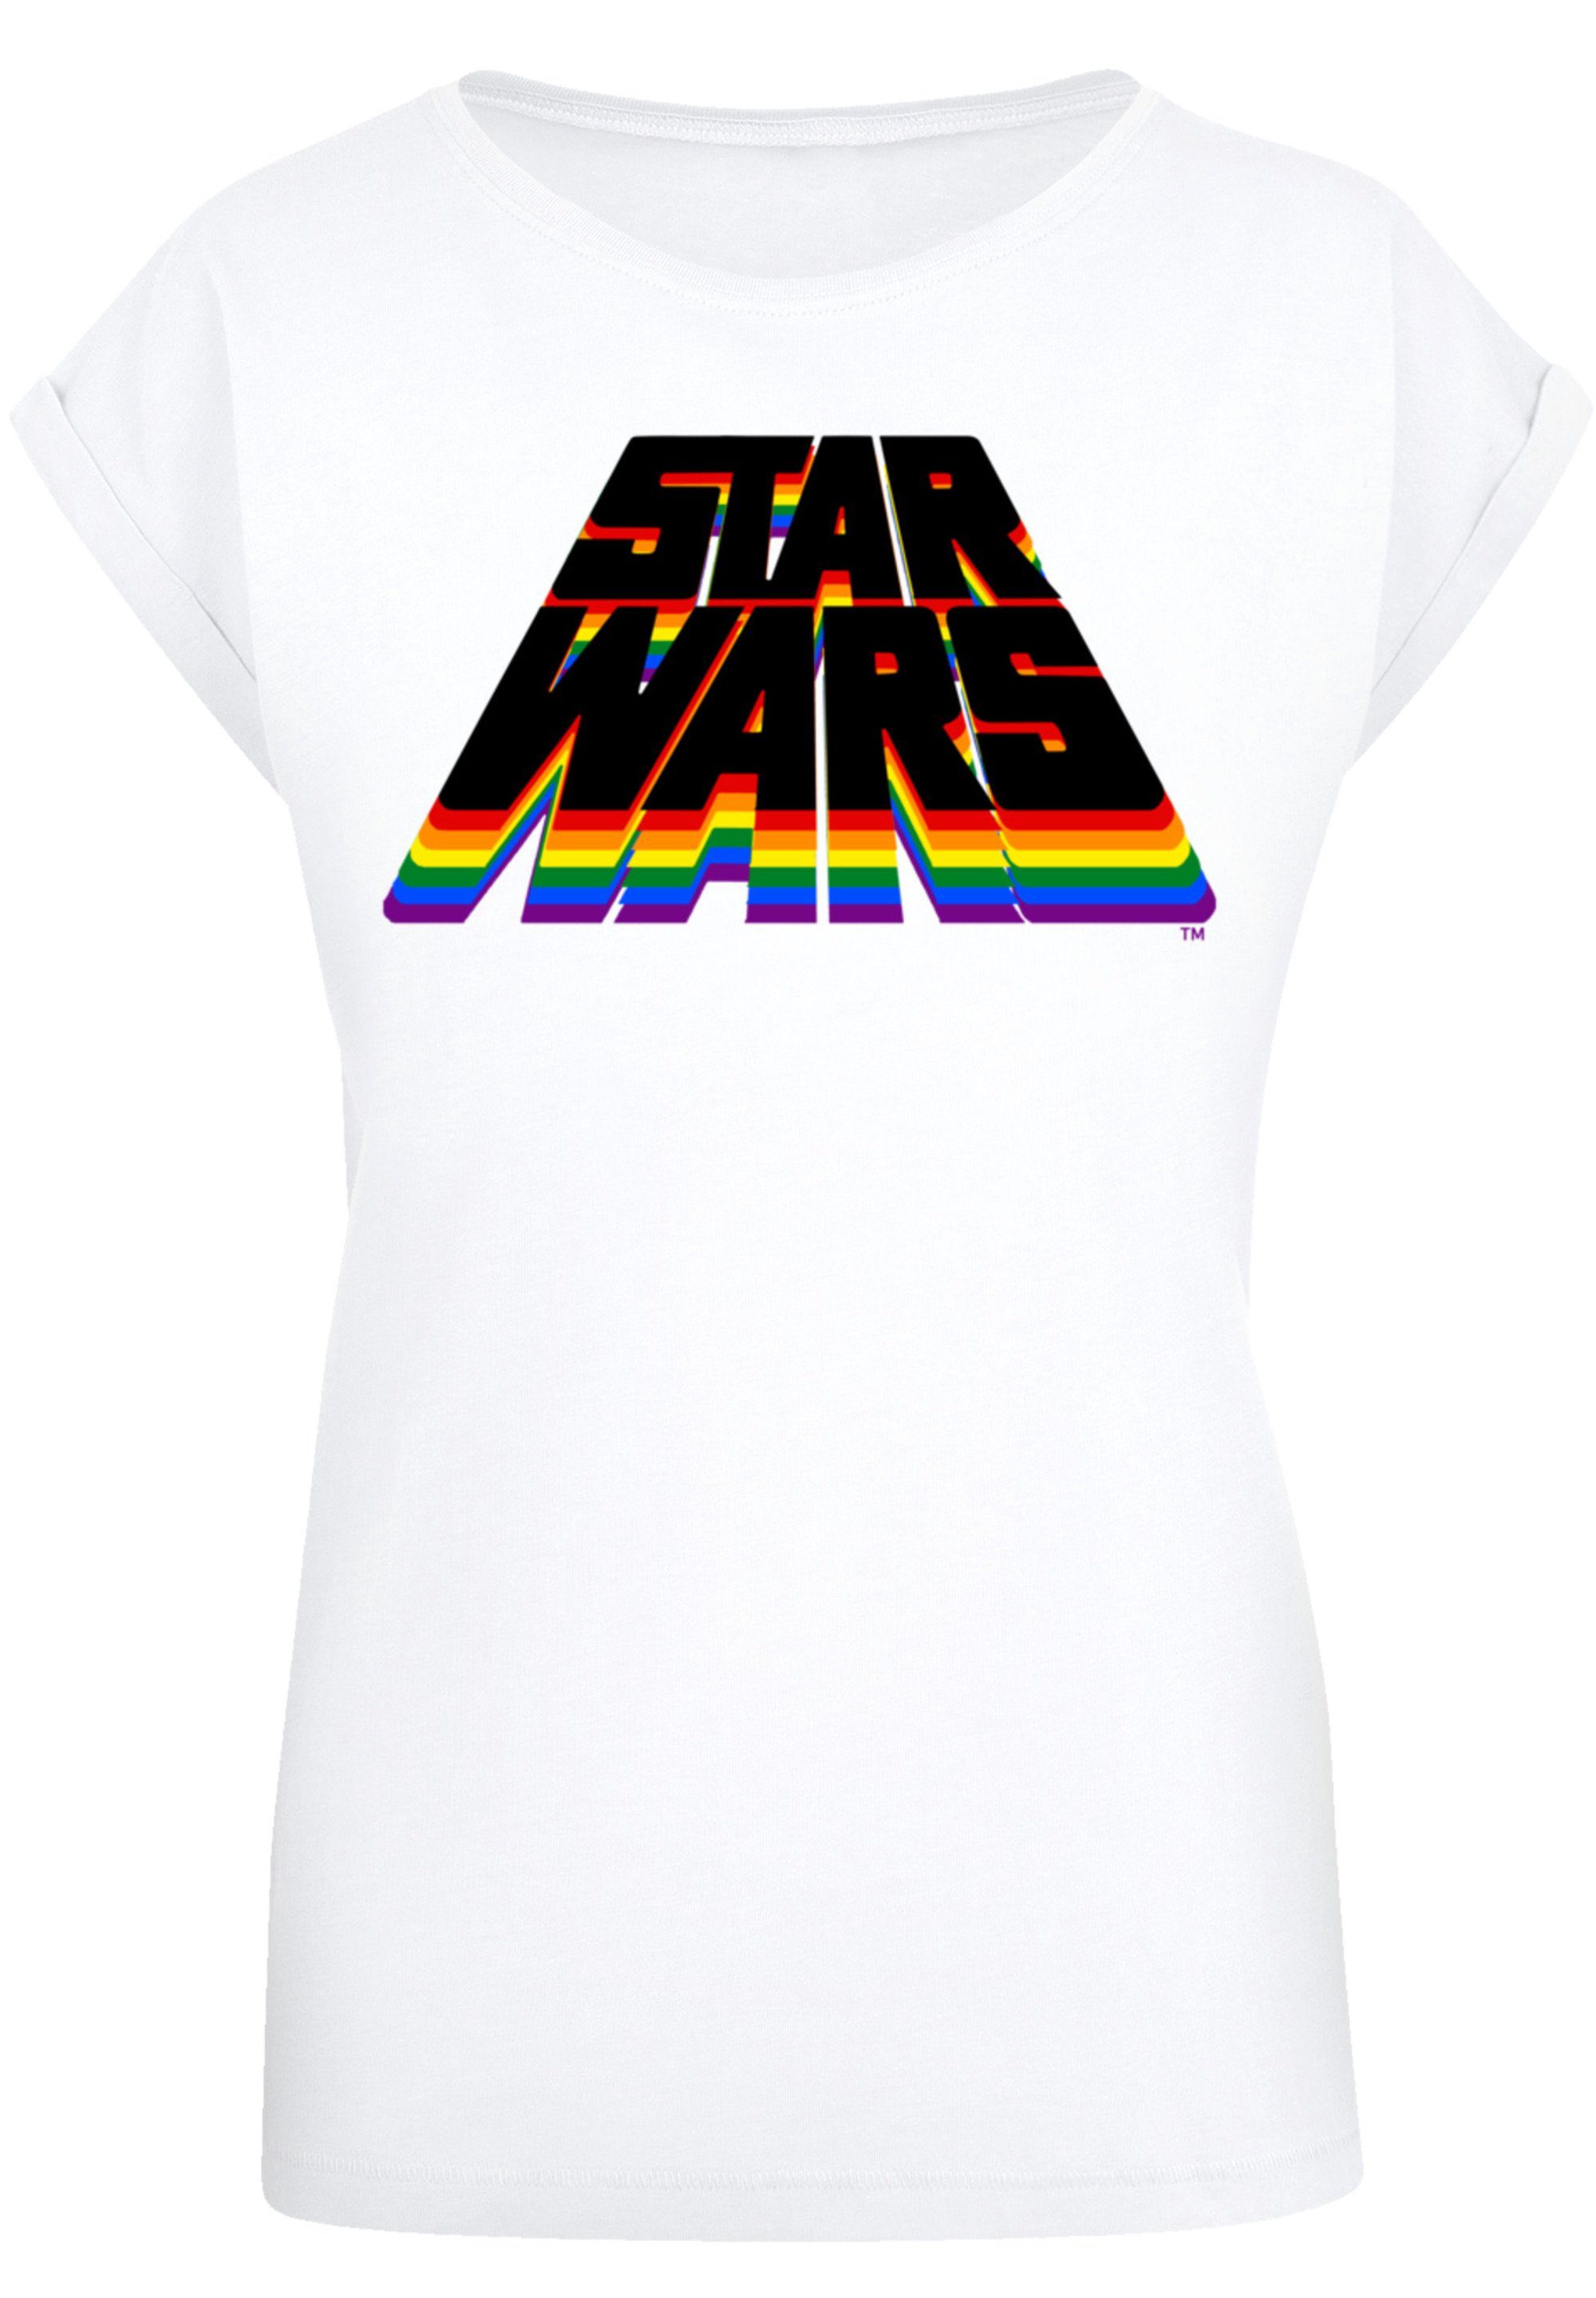 F4NT4STIC T-Shirt Star Wars Vintage Pride Premium Qualität, Sehr weicher  Baumwollstoff mit hohem Tragekomfort